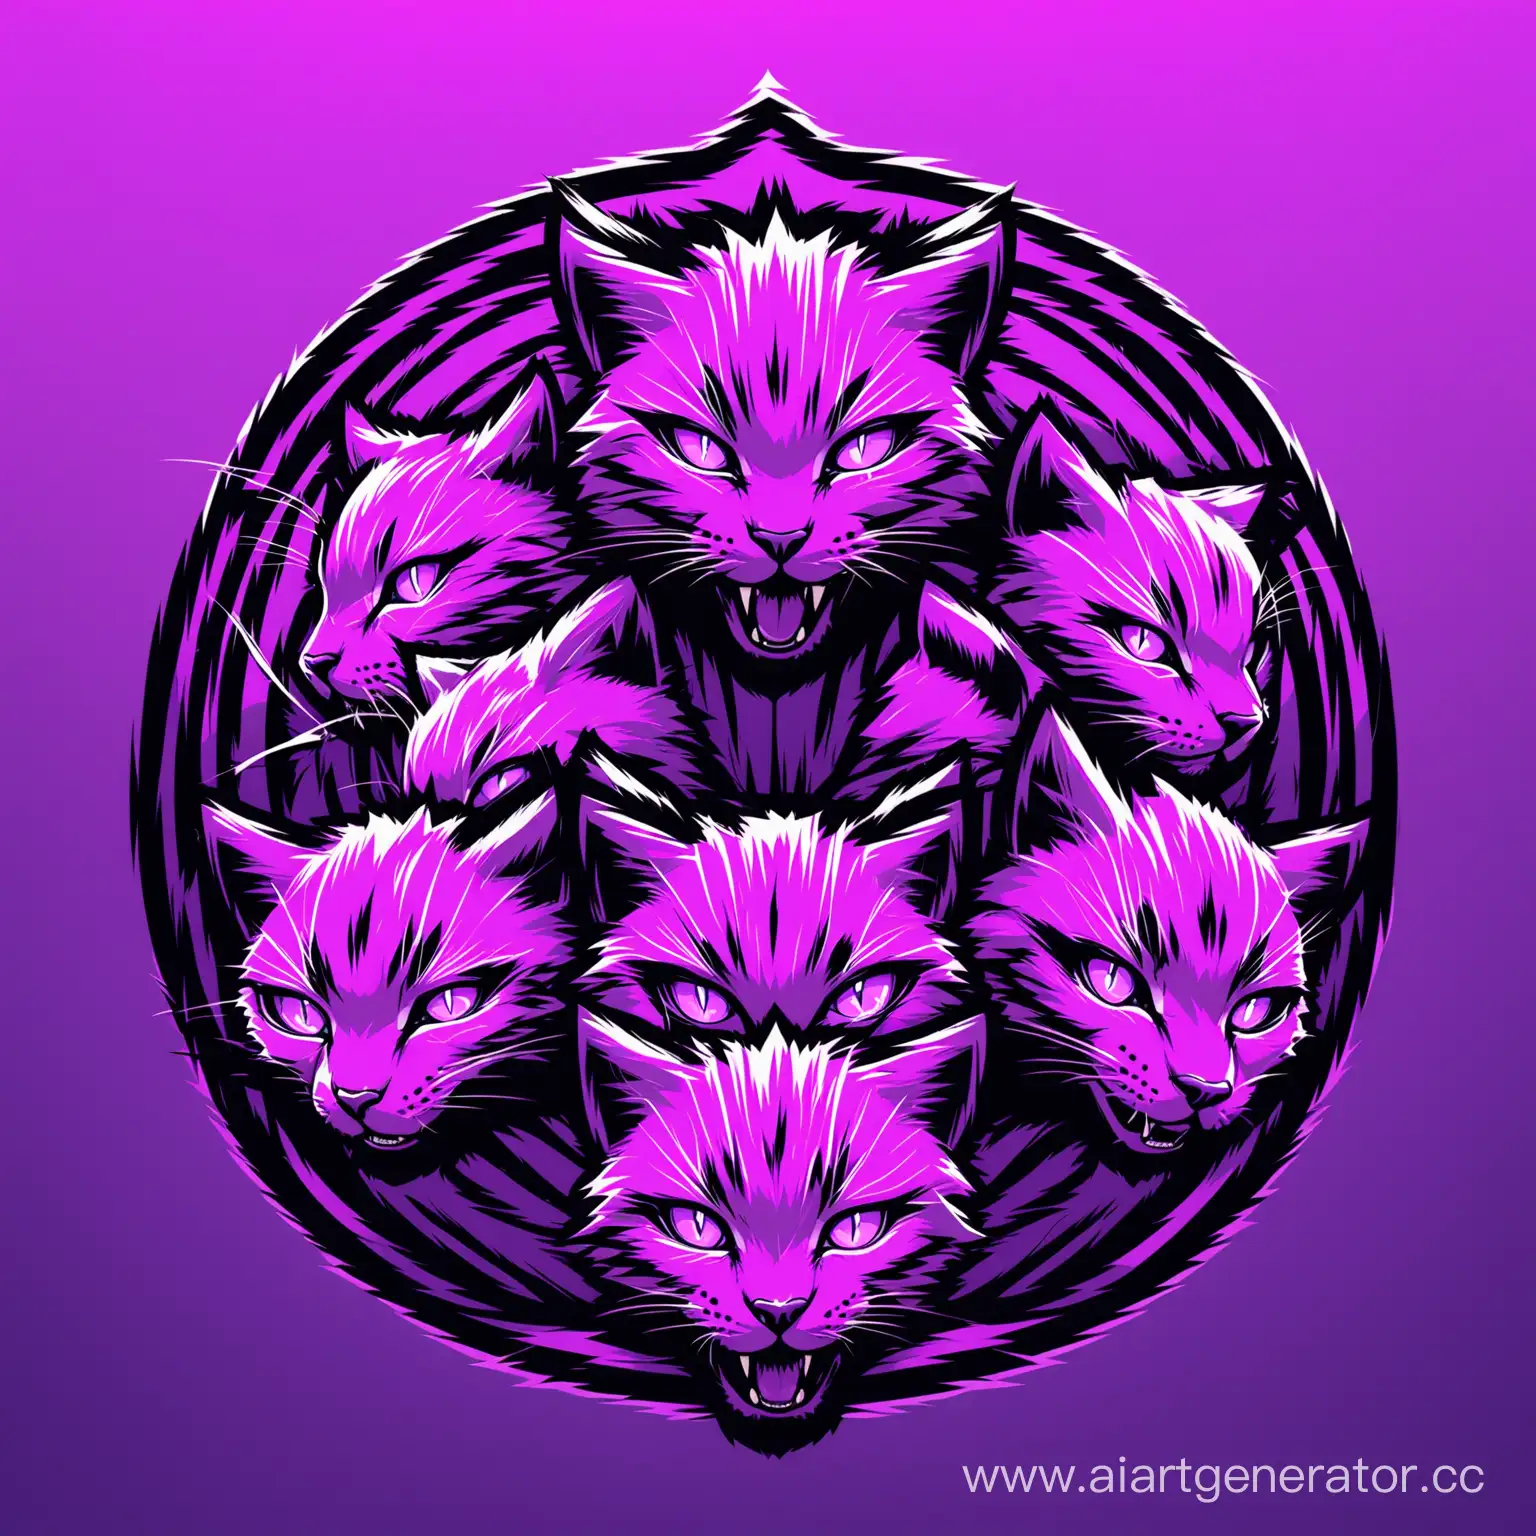 Иконка клана диких котов в шапочках танкистов.
(Фиолетовые цвета) (Резкие линии) (Агрессивность)